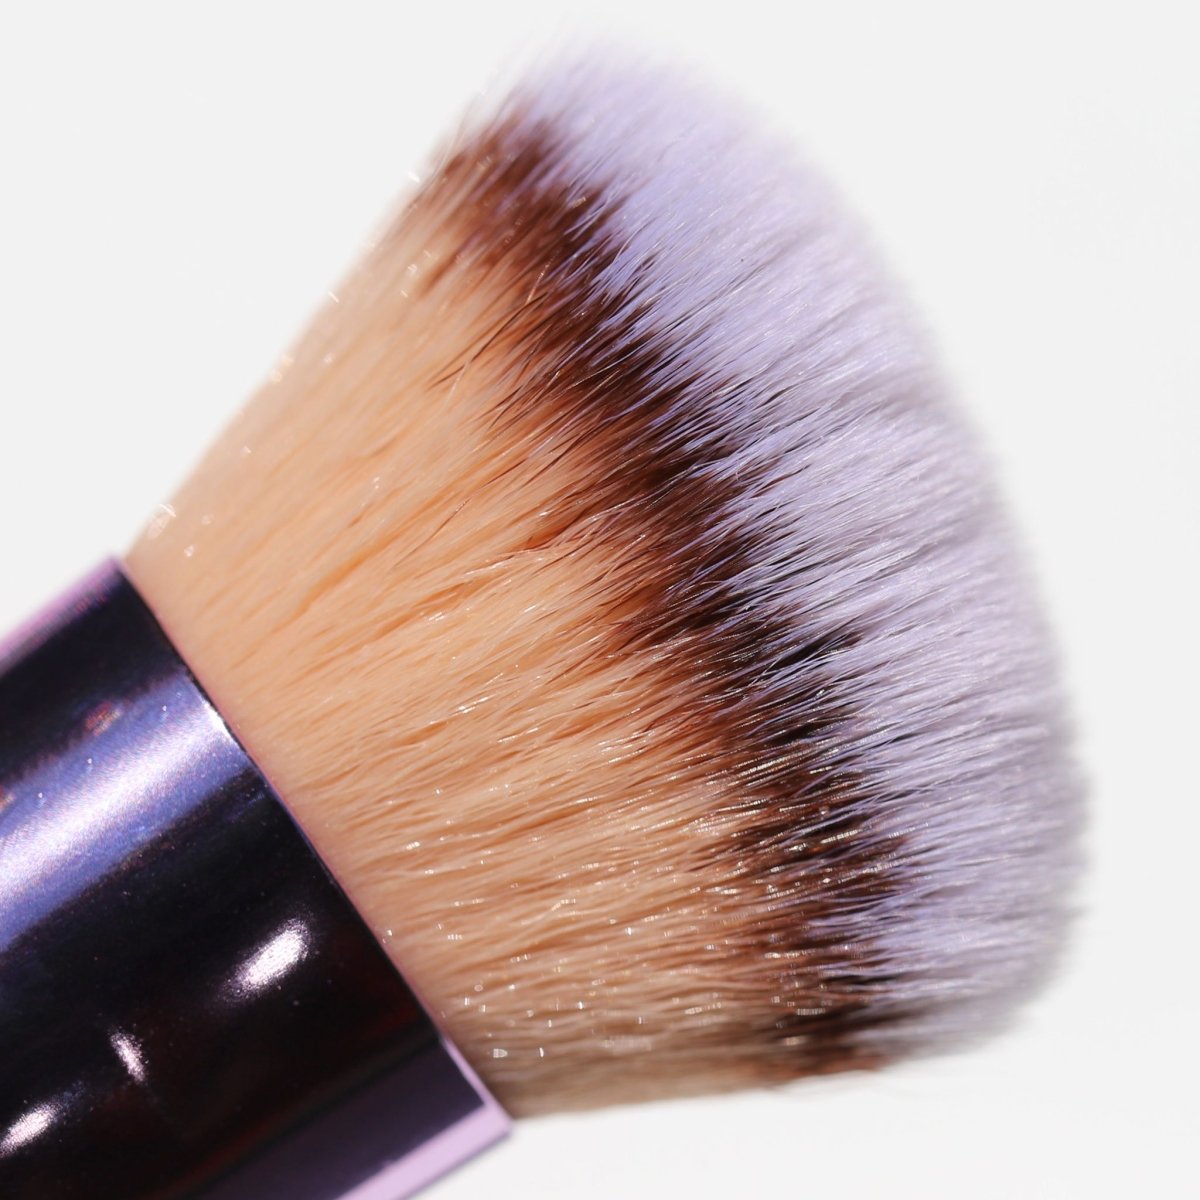 tan brown white fluffy makeup brush - defining brush - half caked makeup